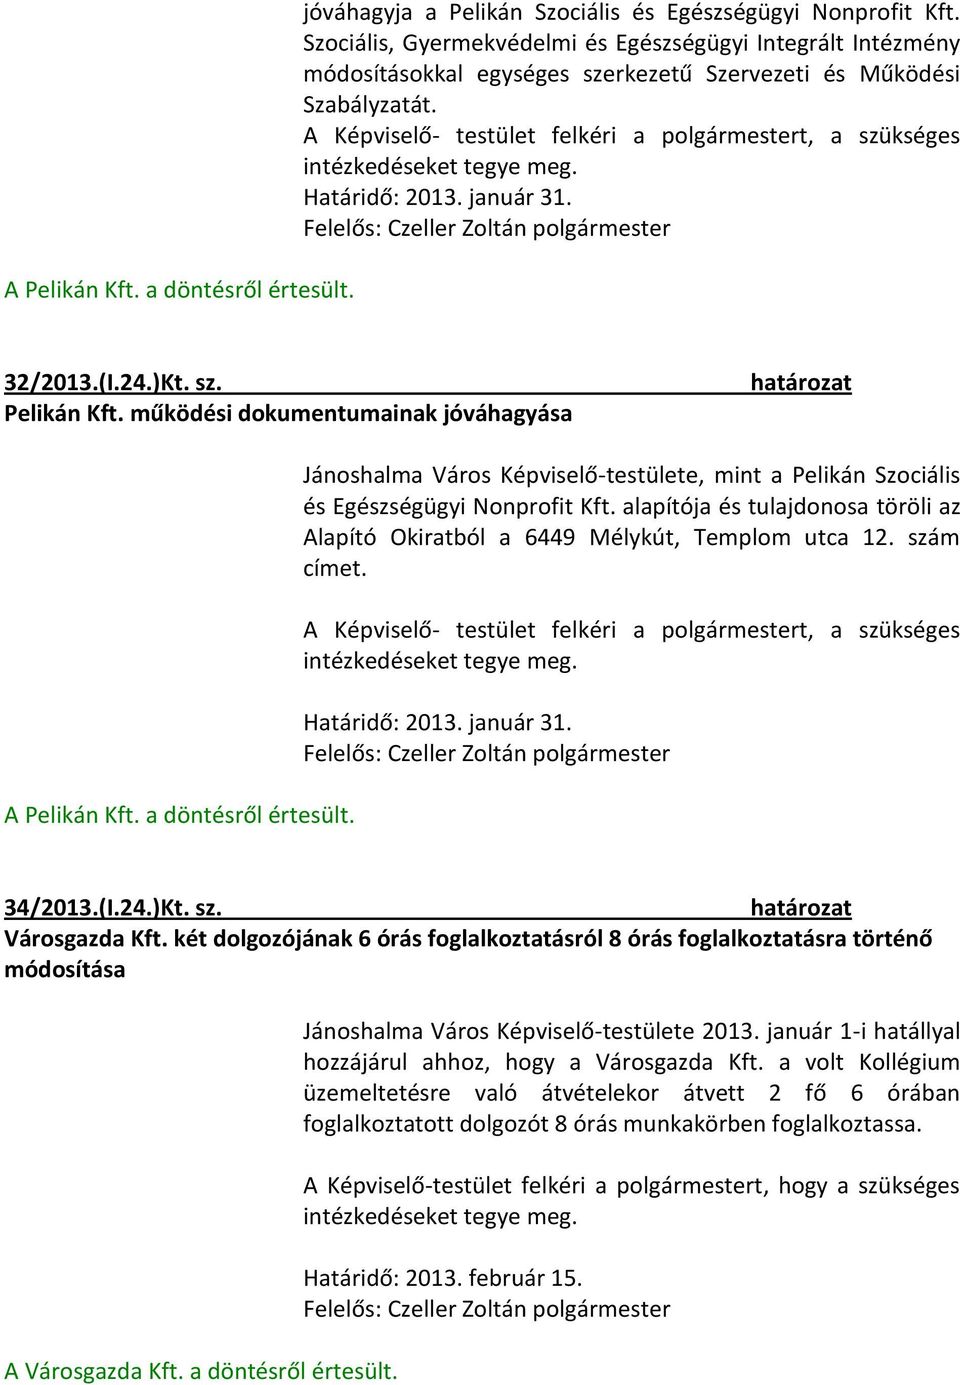 A Képviselő- testület felkéri a polgármestert, a szükséges intézkedéseket tegye meg. 32/2013.(I.24.)Kt. sz. Pelikán Kft. működési dokumentumainak jóváhagyása A Pelikán Kft. a döntésről értesült.